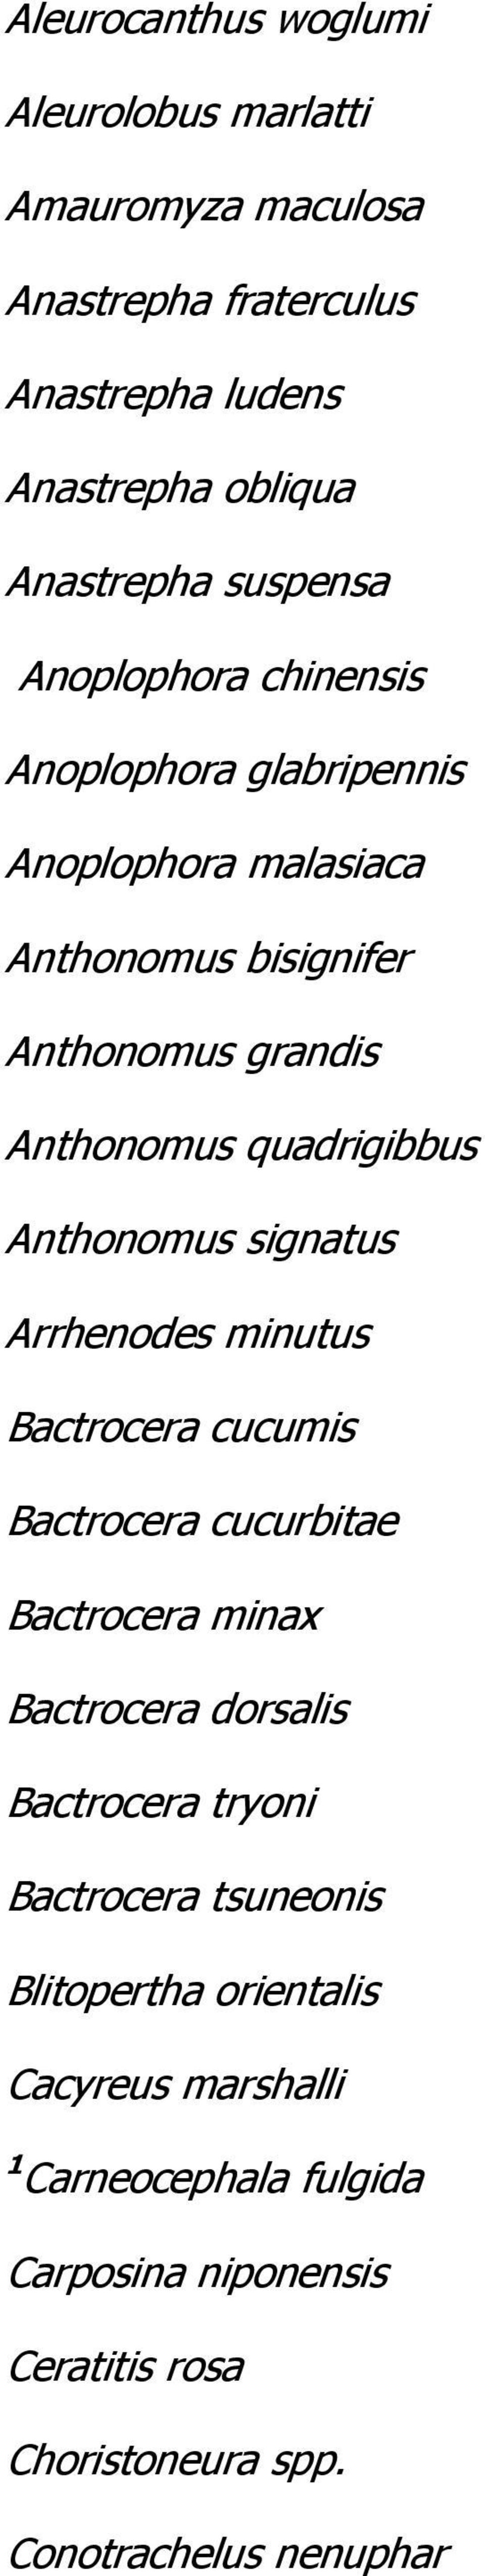 Anthonomus signatus Arrhenodes minutus Bactrocera cucumis Bactrocera cucurbitae Bactrocera minax Bactrocera dorsalis Bactrocera tryoni